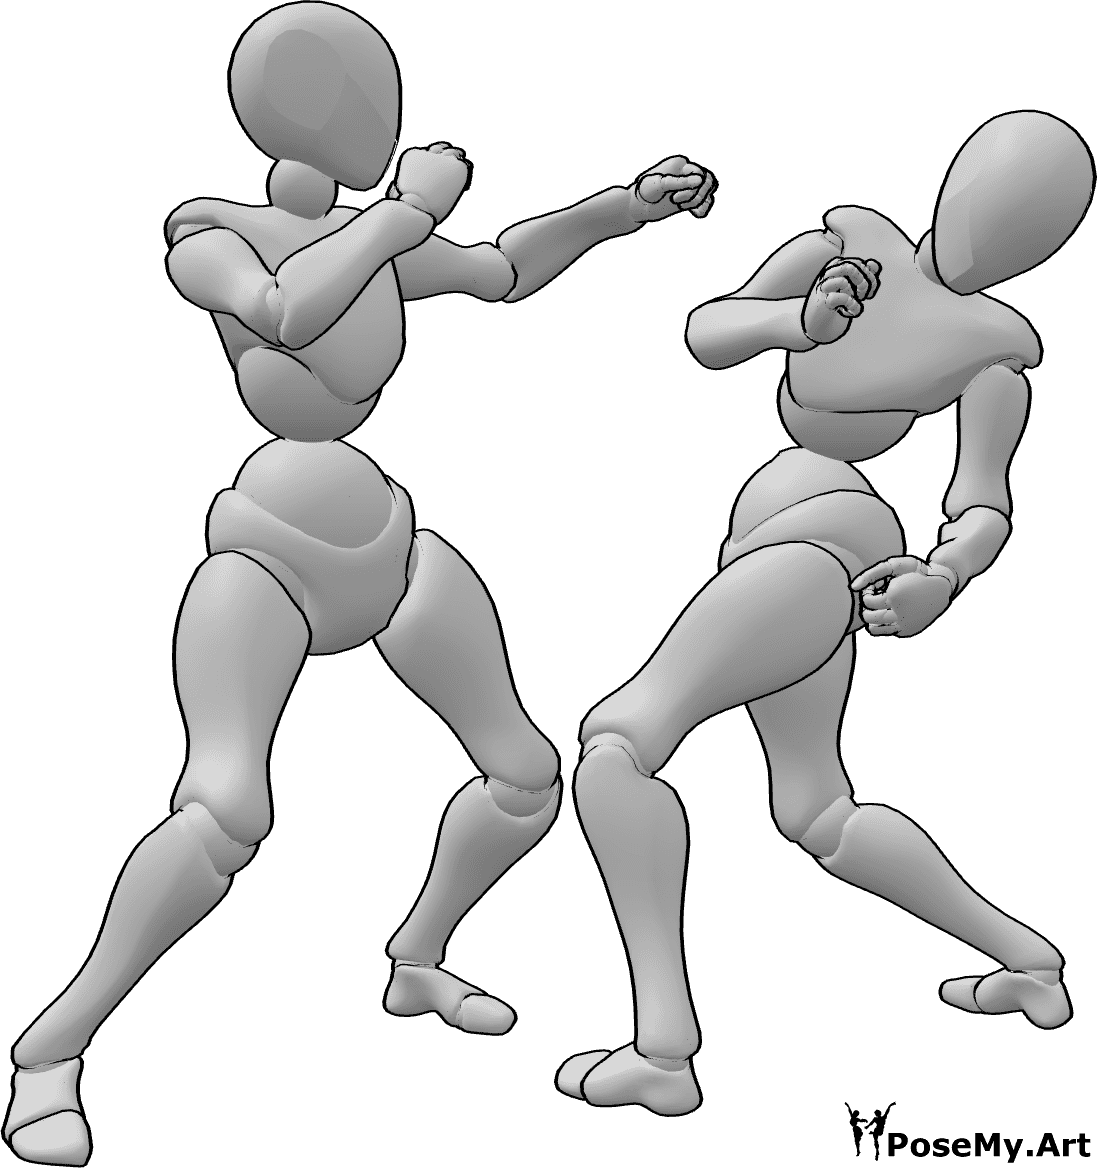 Referência de poses- Esquiva-se da pose de soco - Duas mulheres estão a lutar, a mulher esquiva-se da pose de soco